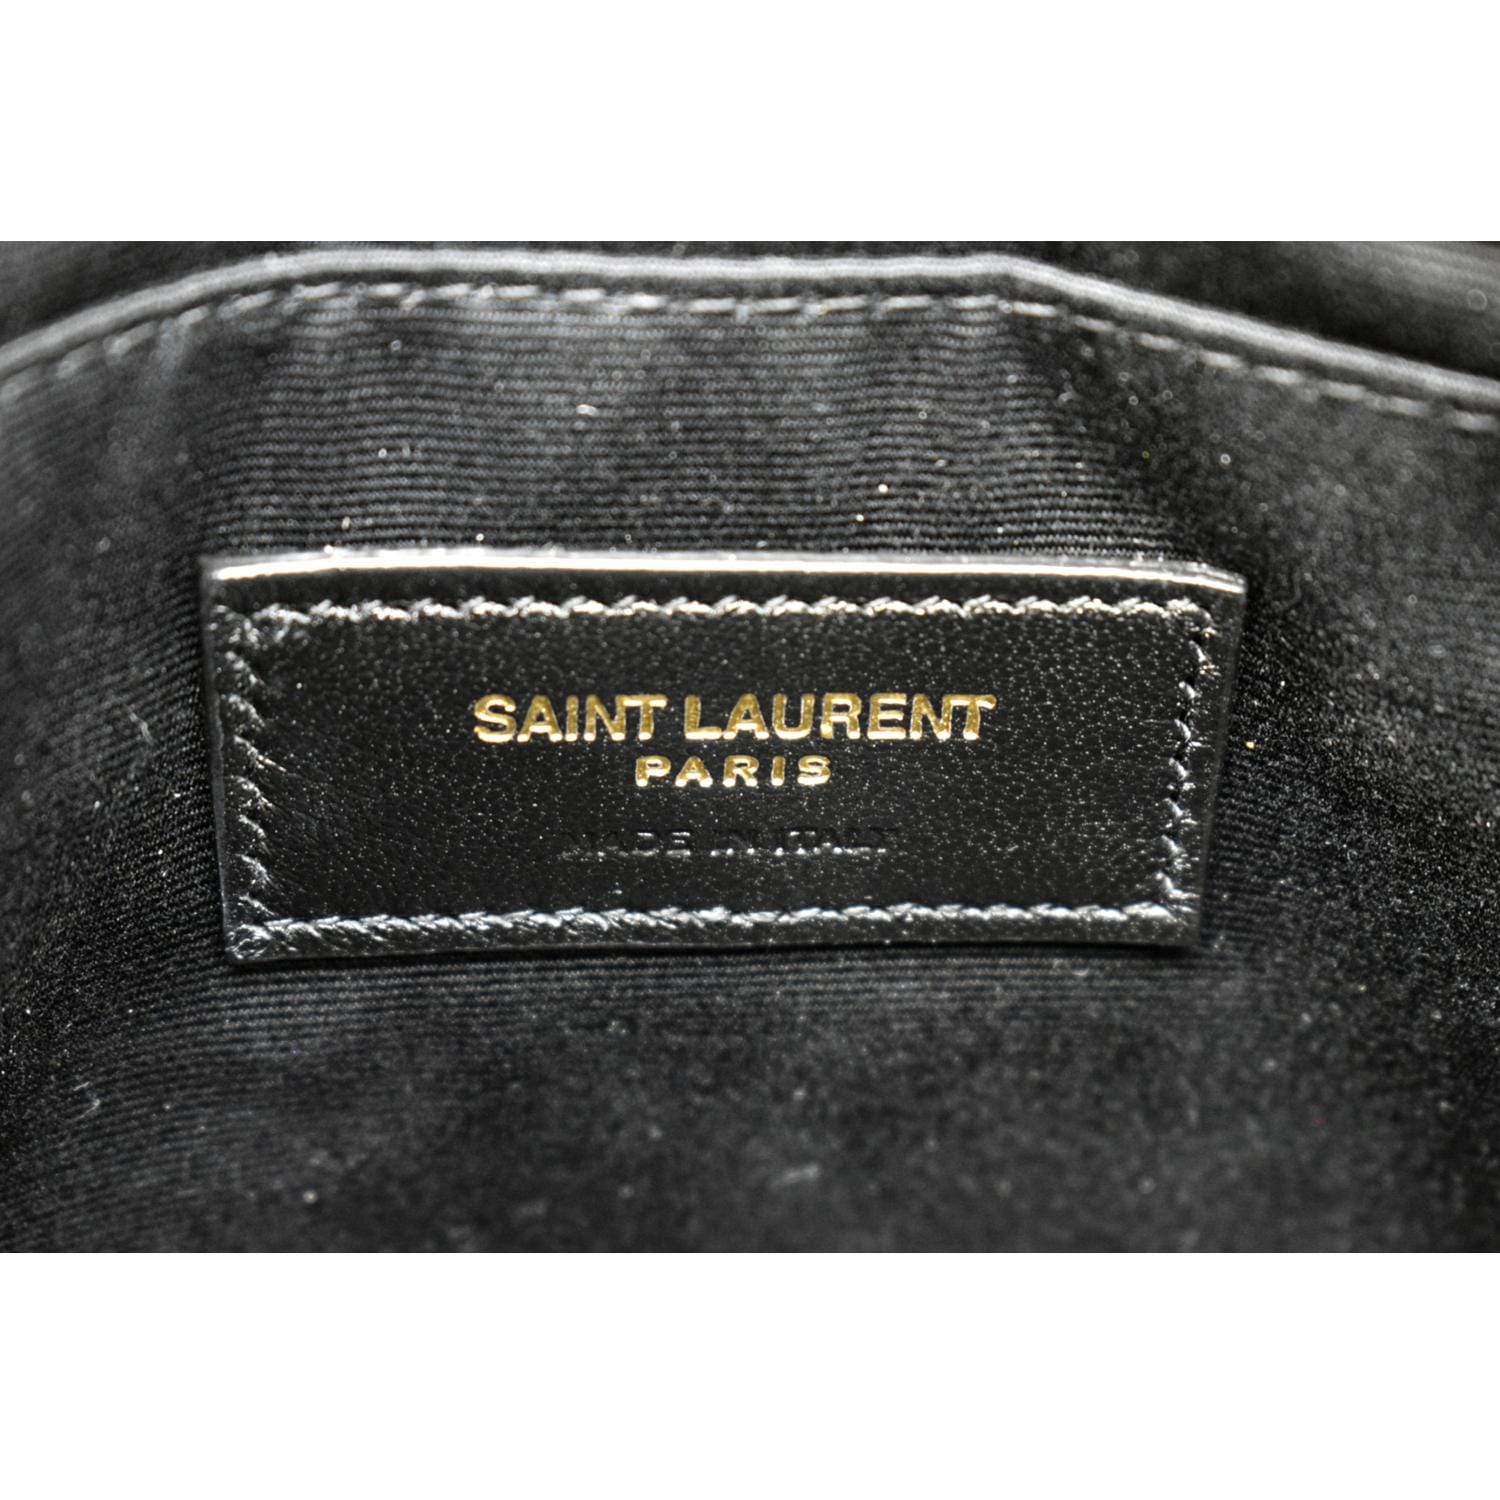 Saint Laurent Paris Flap Pouch Clutch Bag